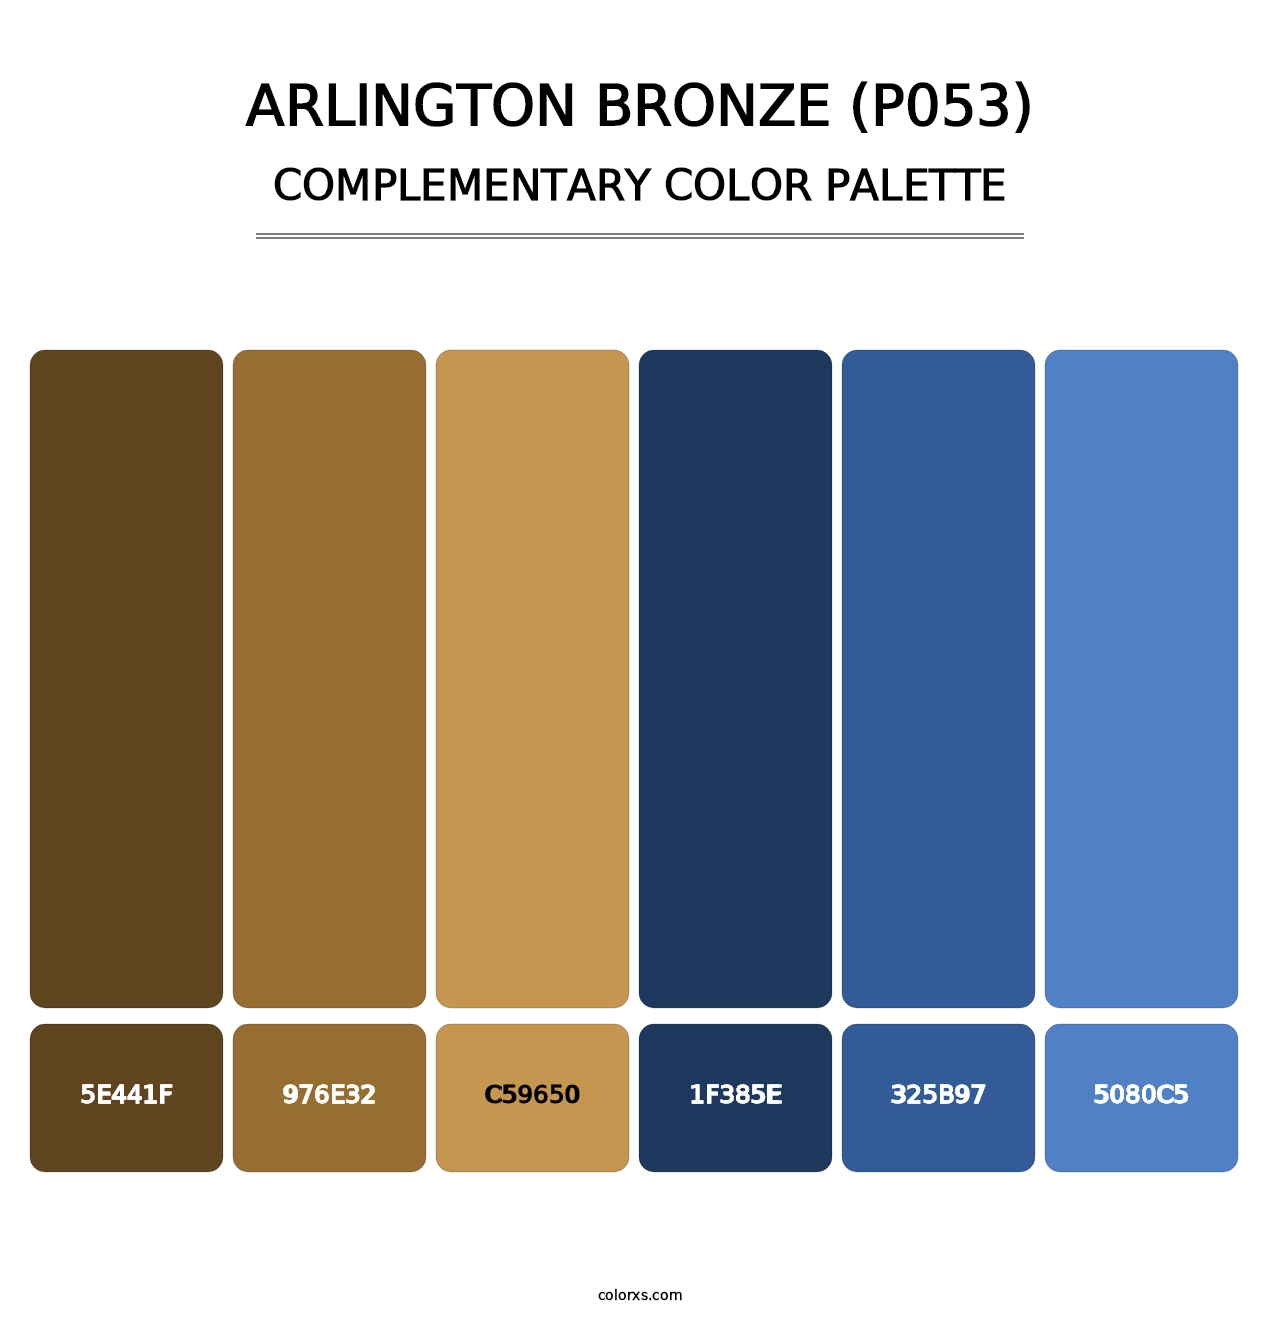 Arlington Bronze (P053) - Complementary Color Palette